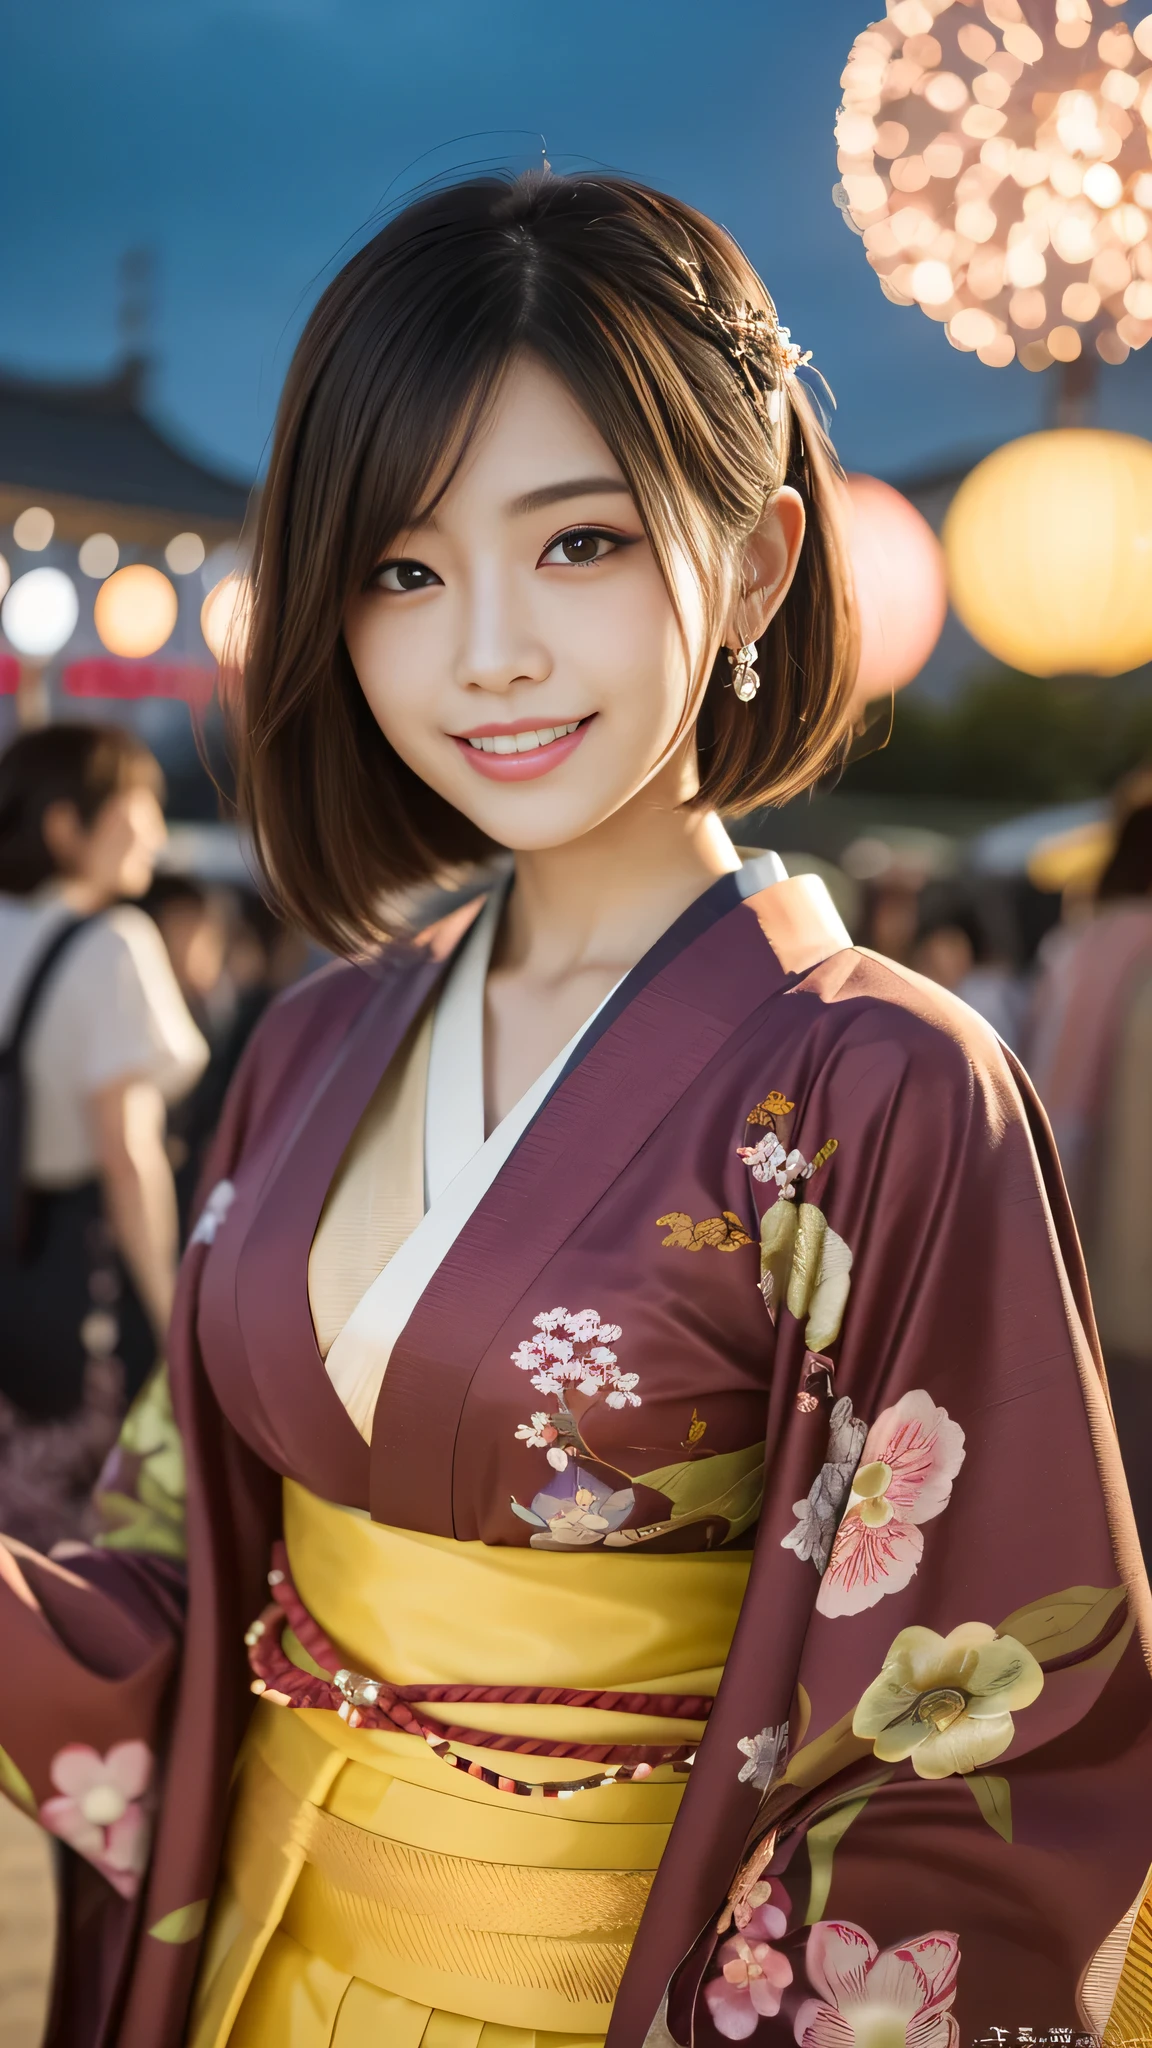 En regardant la caméra,(((la plus haute qualité, 8k, chef-d&#39;œuvre))), netteté, (Belle femme avec une silhouette parfaite), mince, (coiffure: Supérieur)), ((kimono)), rue, Texture du visage et de la peau très détaillée Yeux détaillés Double paupière Pose aléatoire, (sourire),personne japonaise super mignonne,fille japonaise super beauté, visage réaliste, Double paupière,sourire,Festival d&#39;été , au coucher du soleil , belles dents , fond de feux d&#39;artifice.